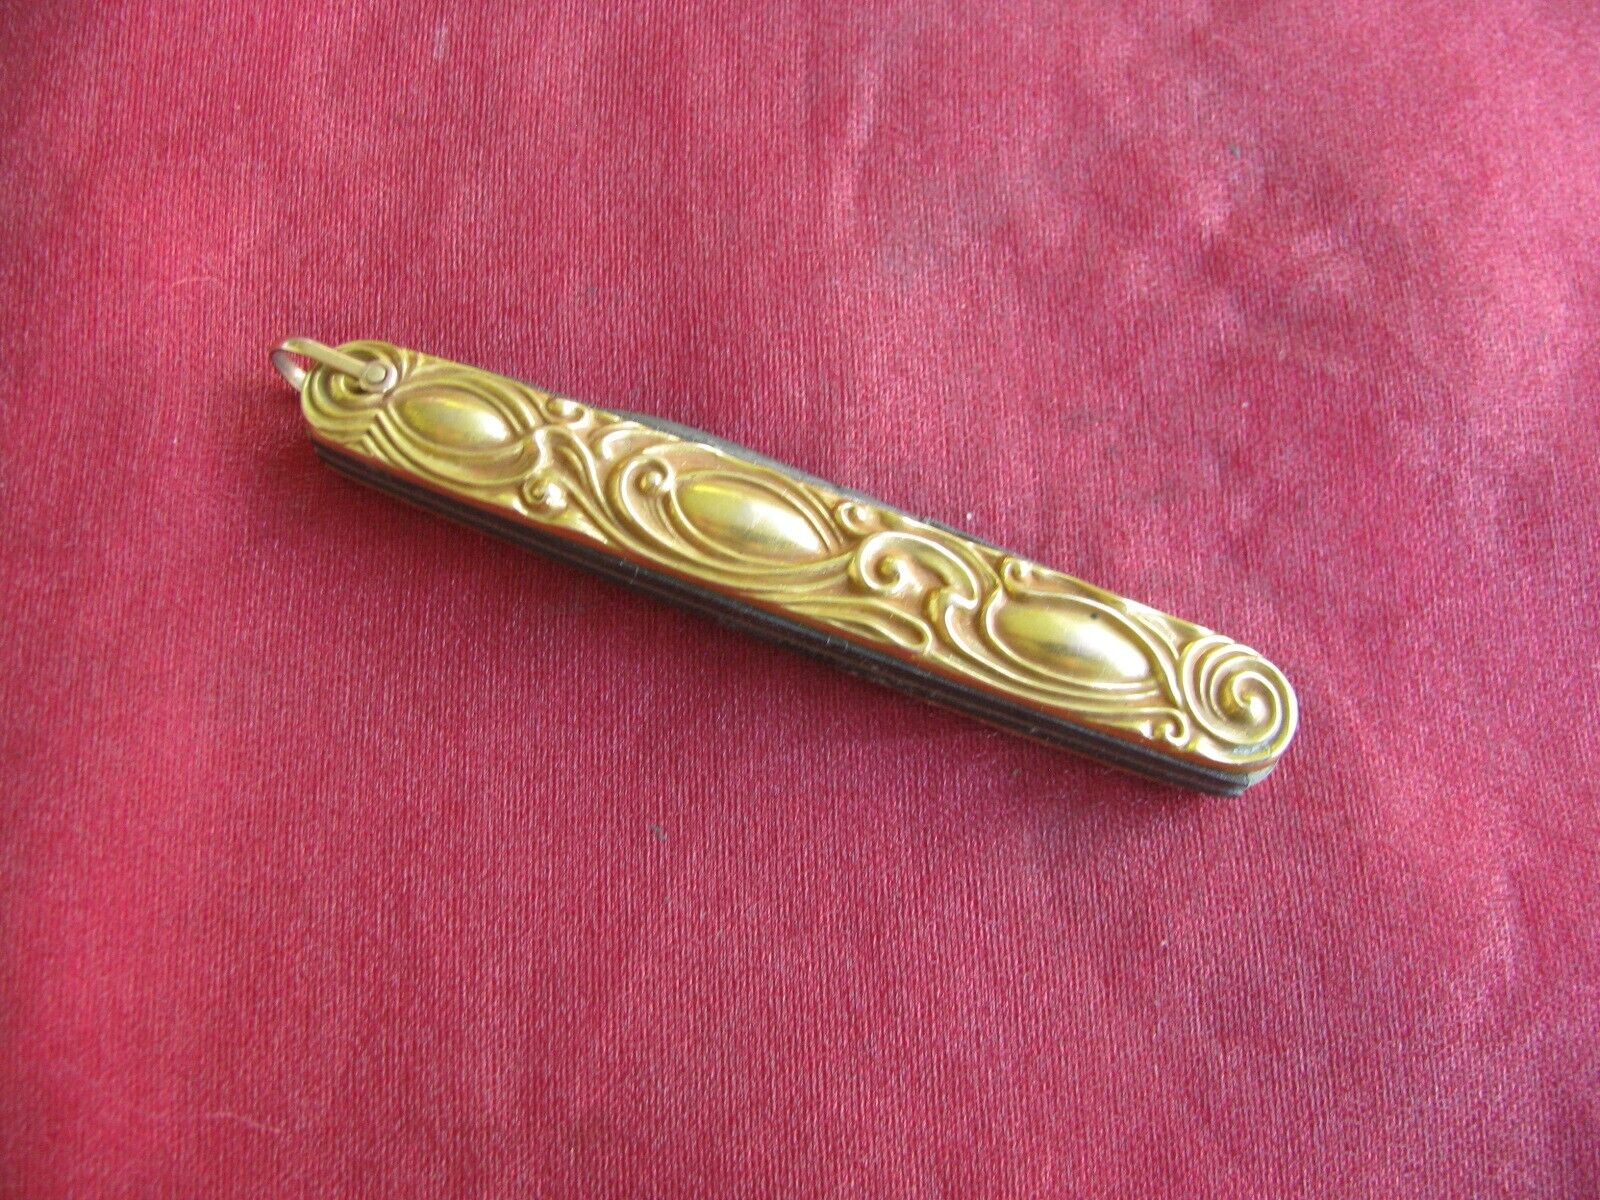 L&K Vintage 4-Blade Gentleman's Pocket Knife, 14K Gold Art Nouveau Scales